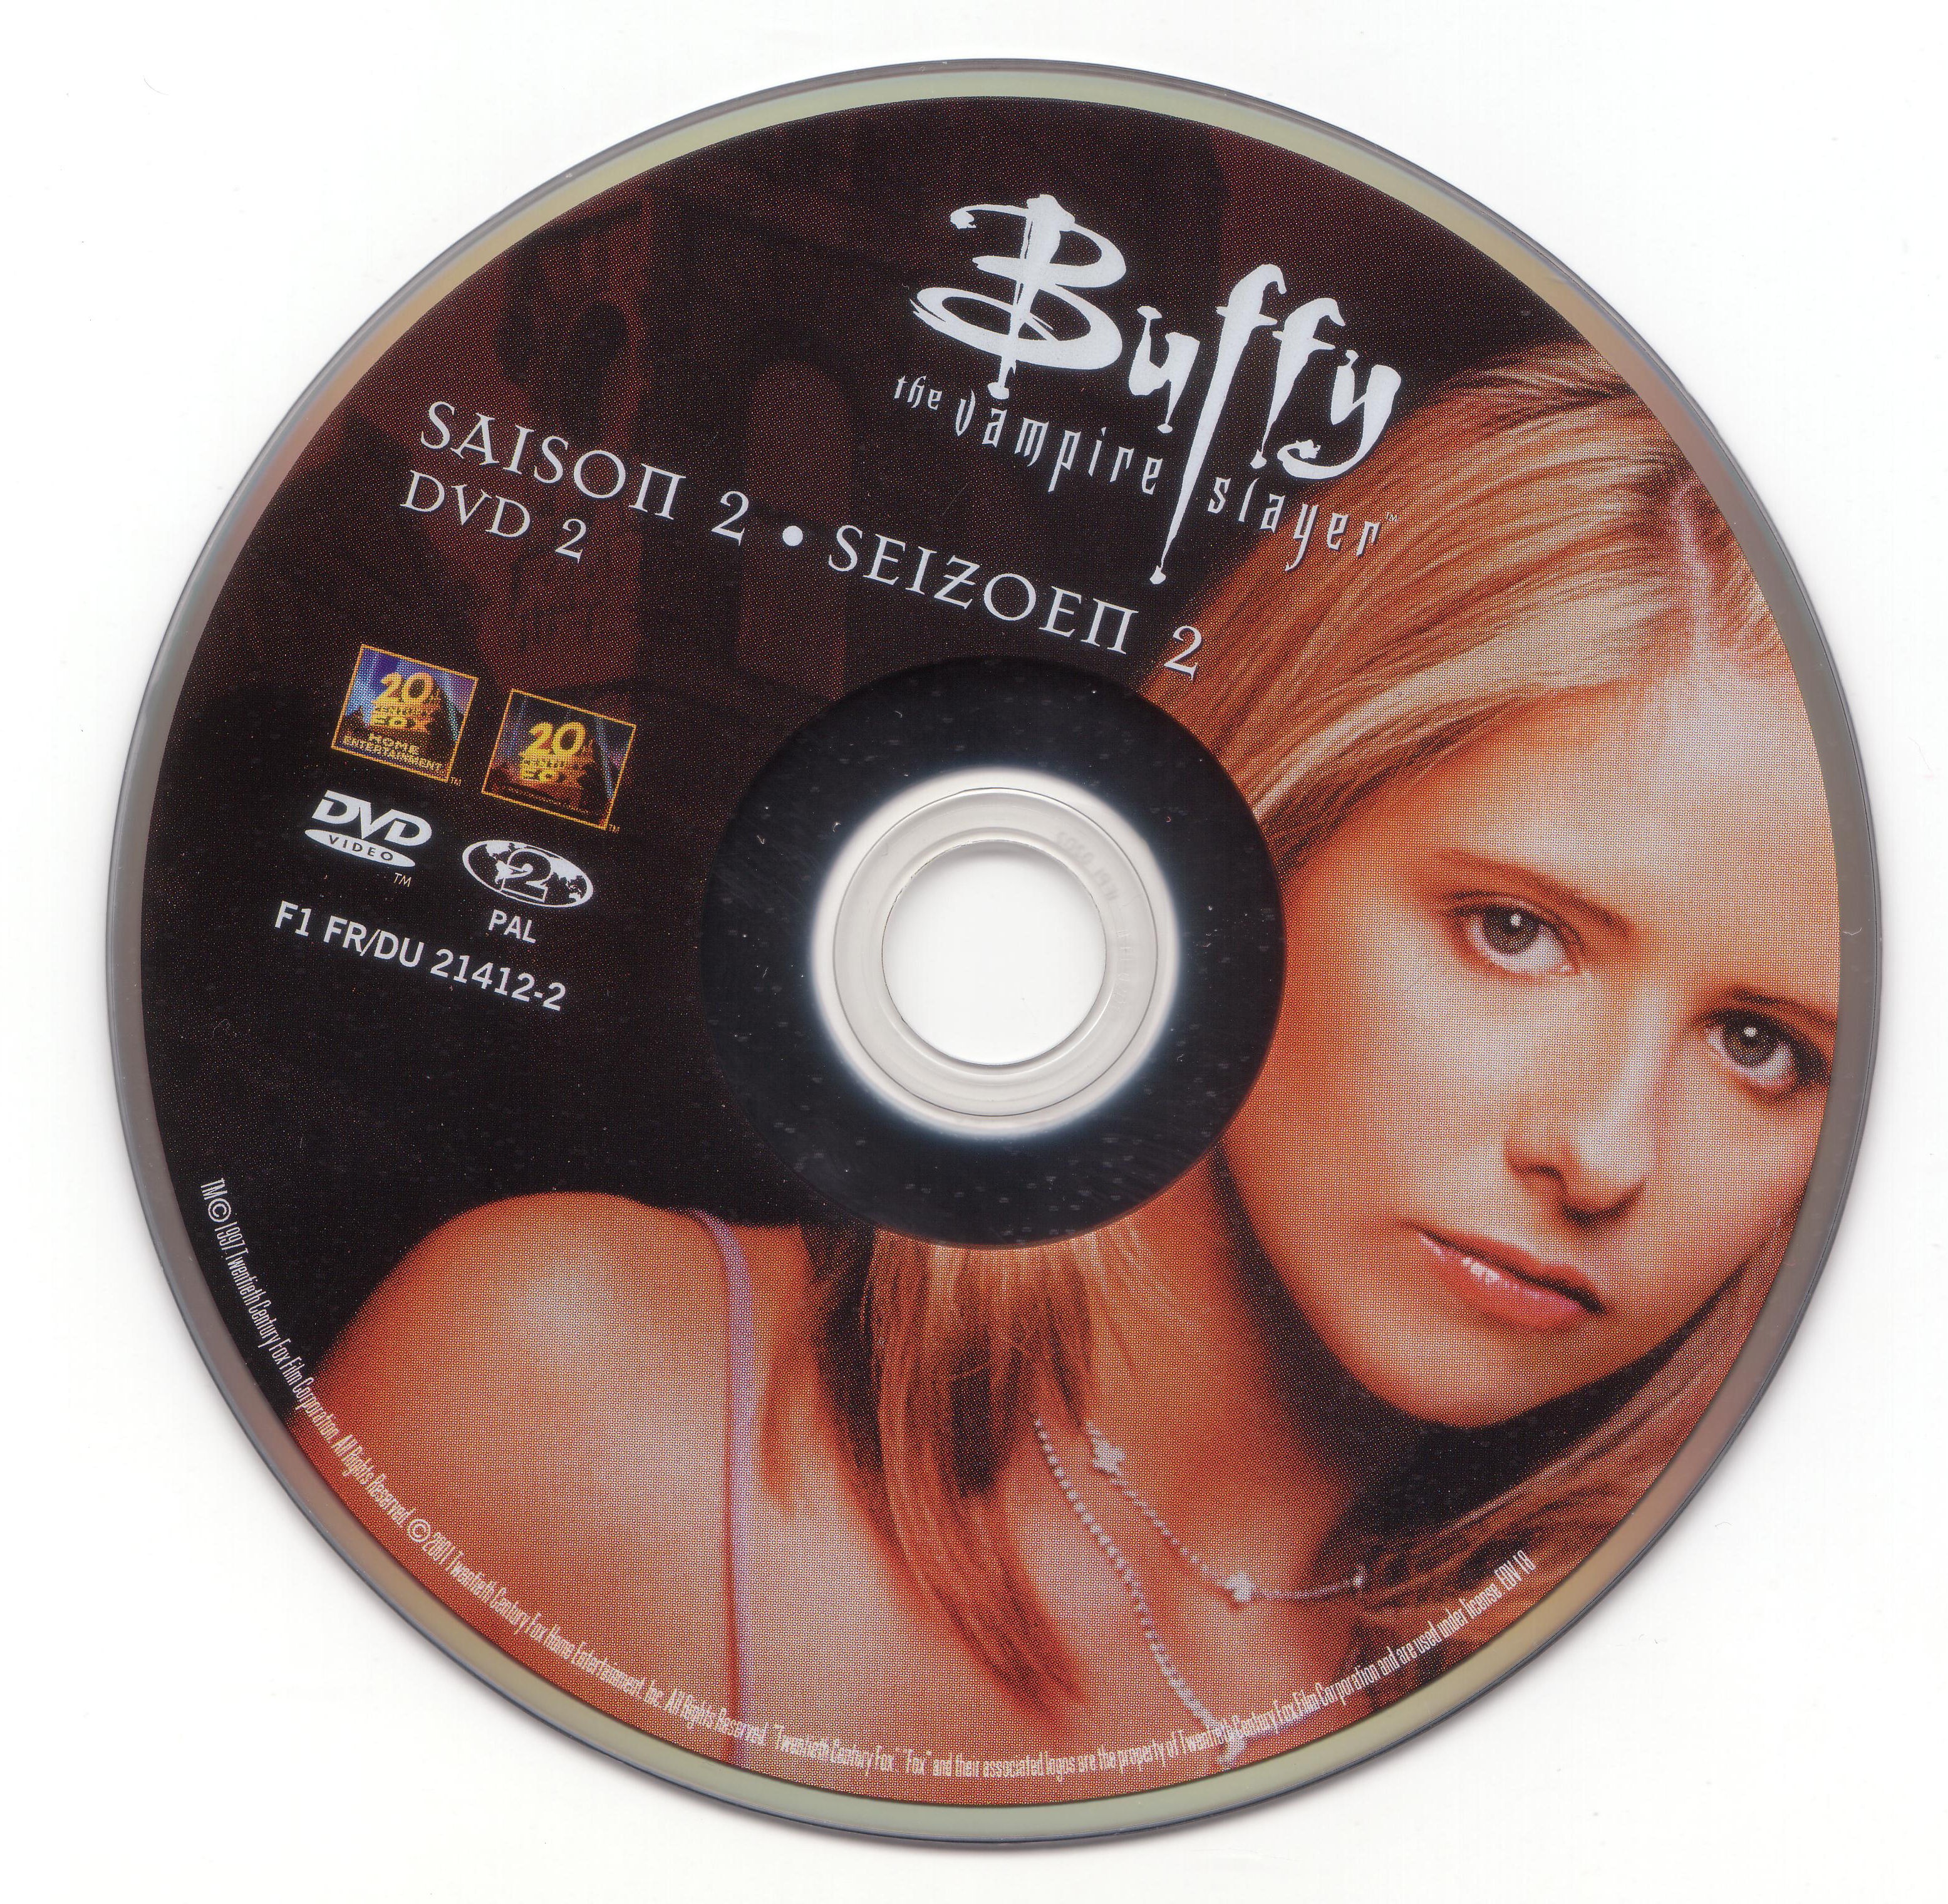 Buffy contre les vampires Saison 2 DVD 2